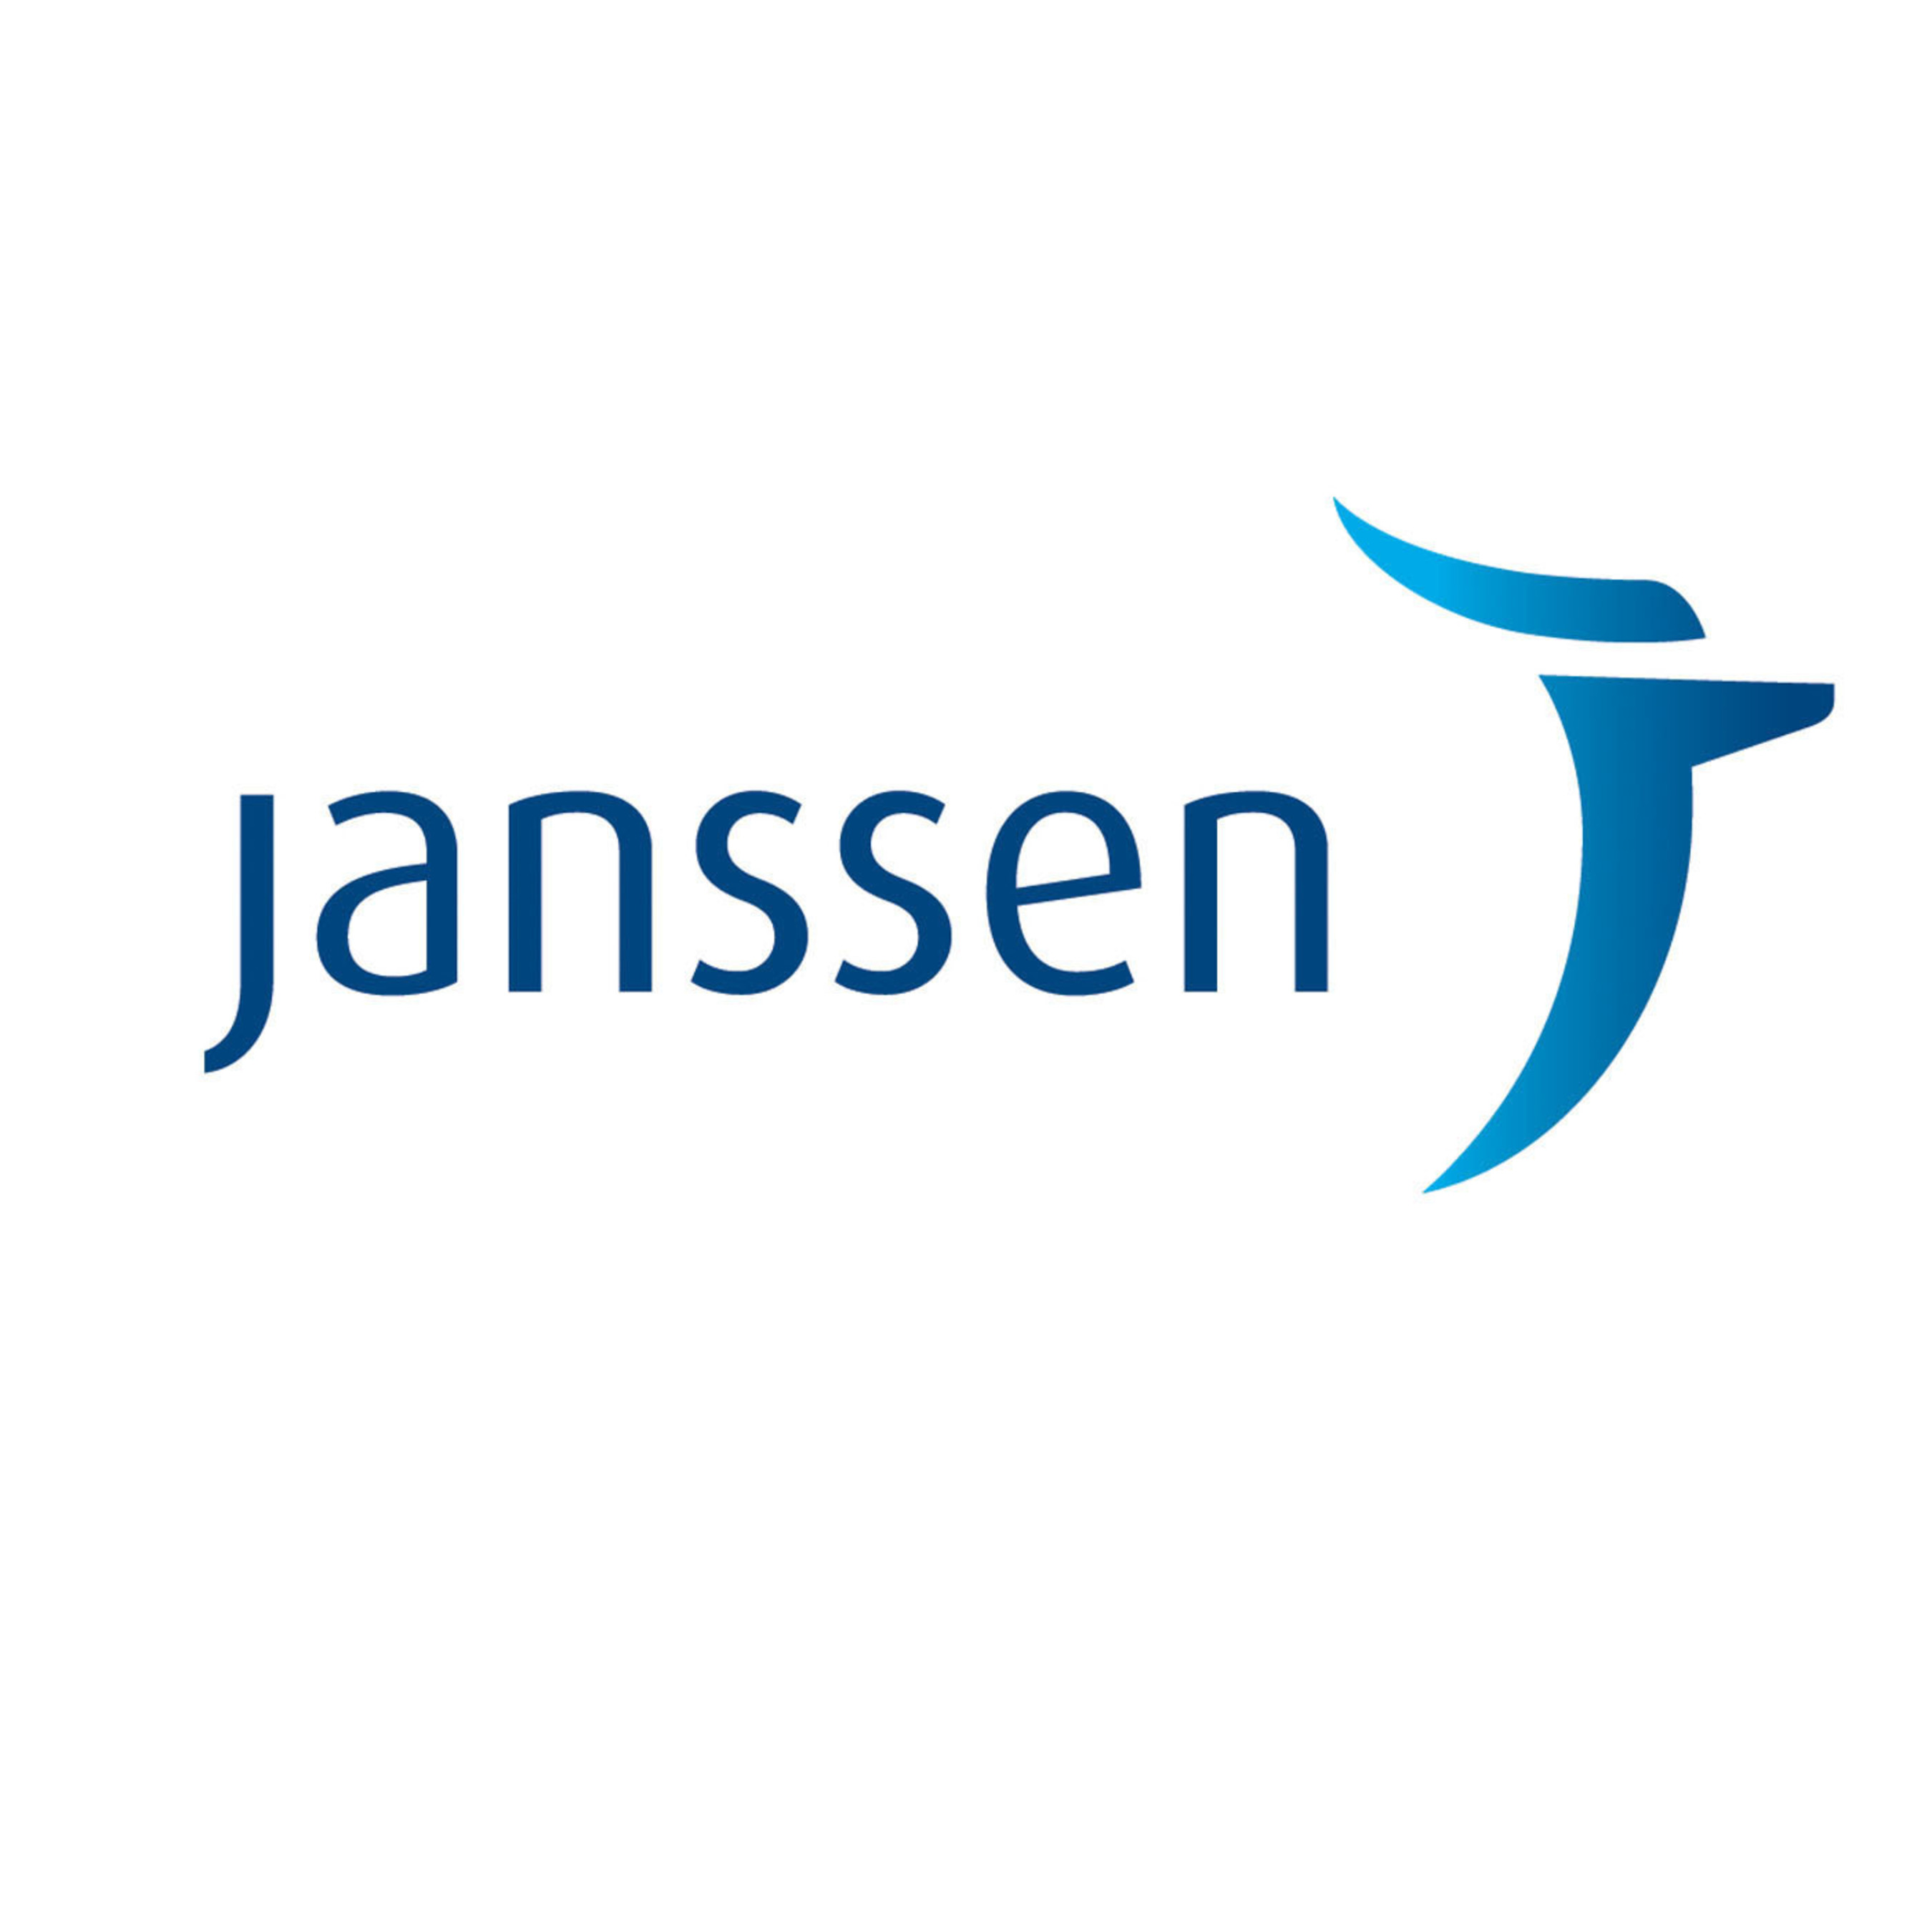 Janssen Logo.